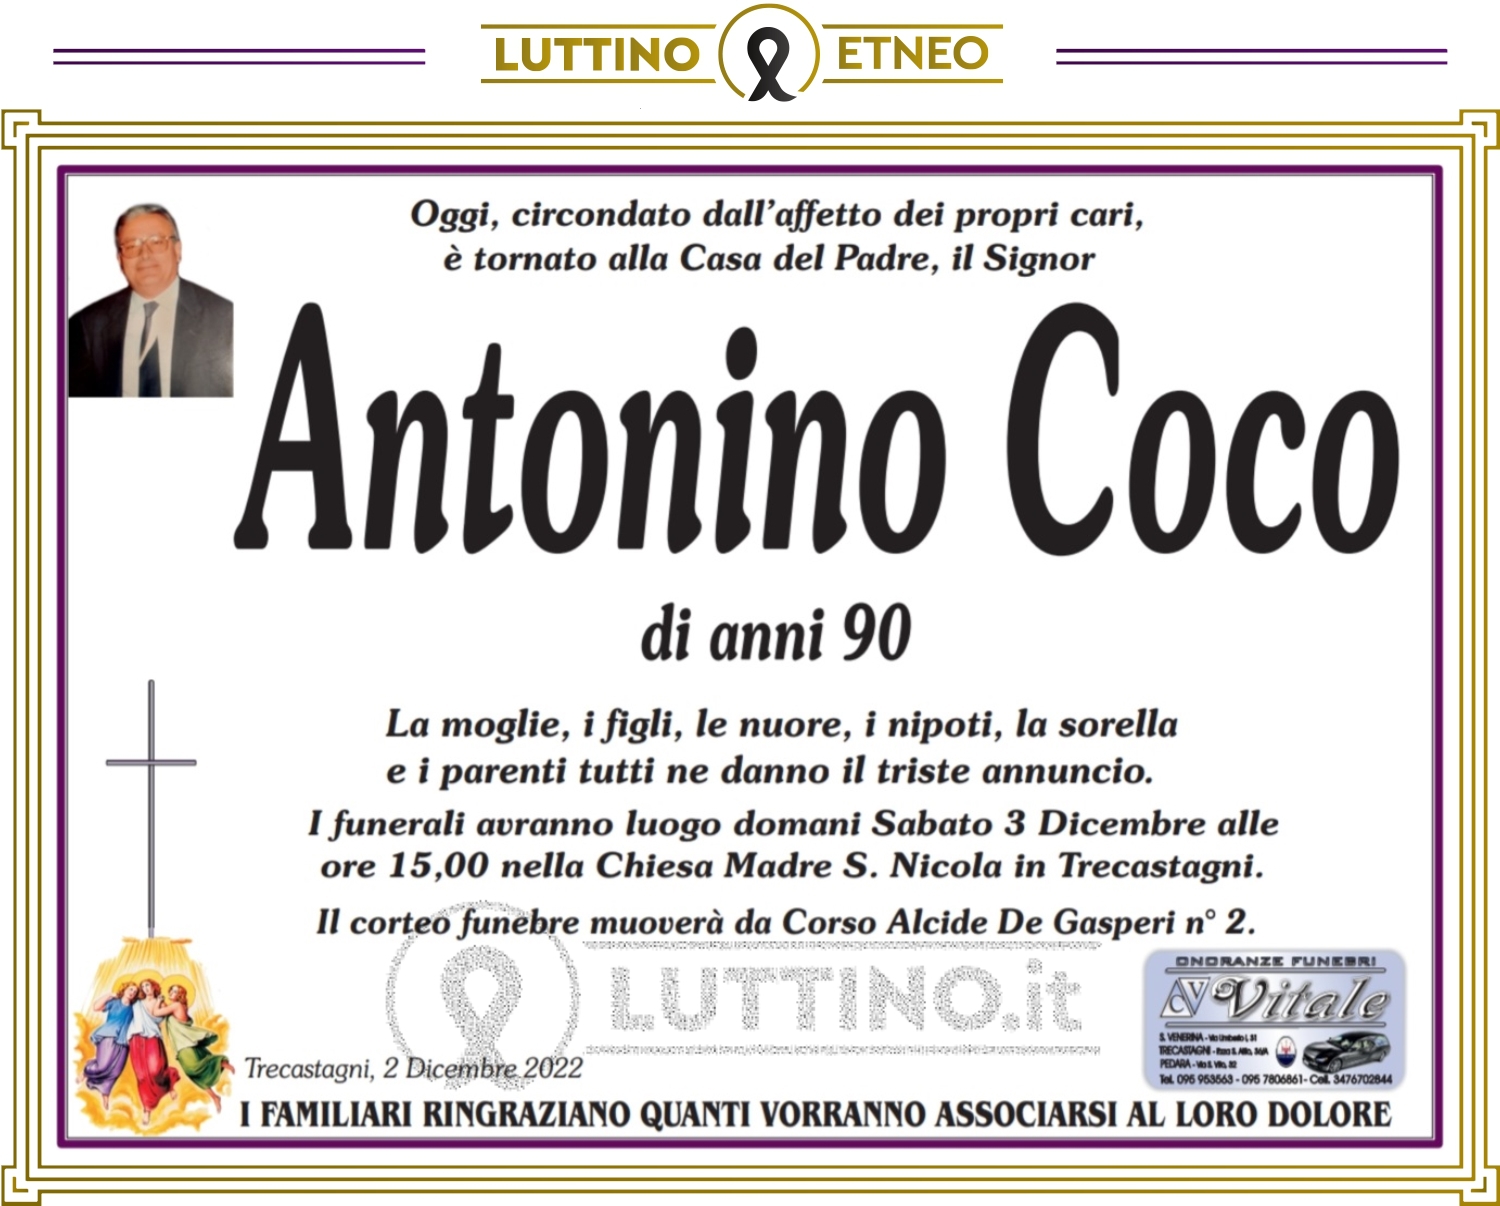 Antonino Coco